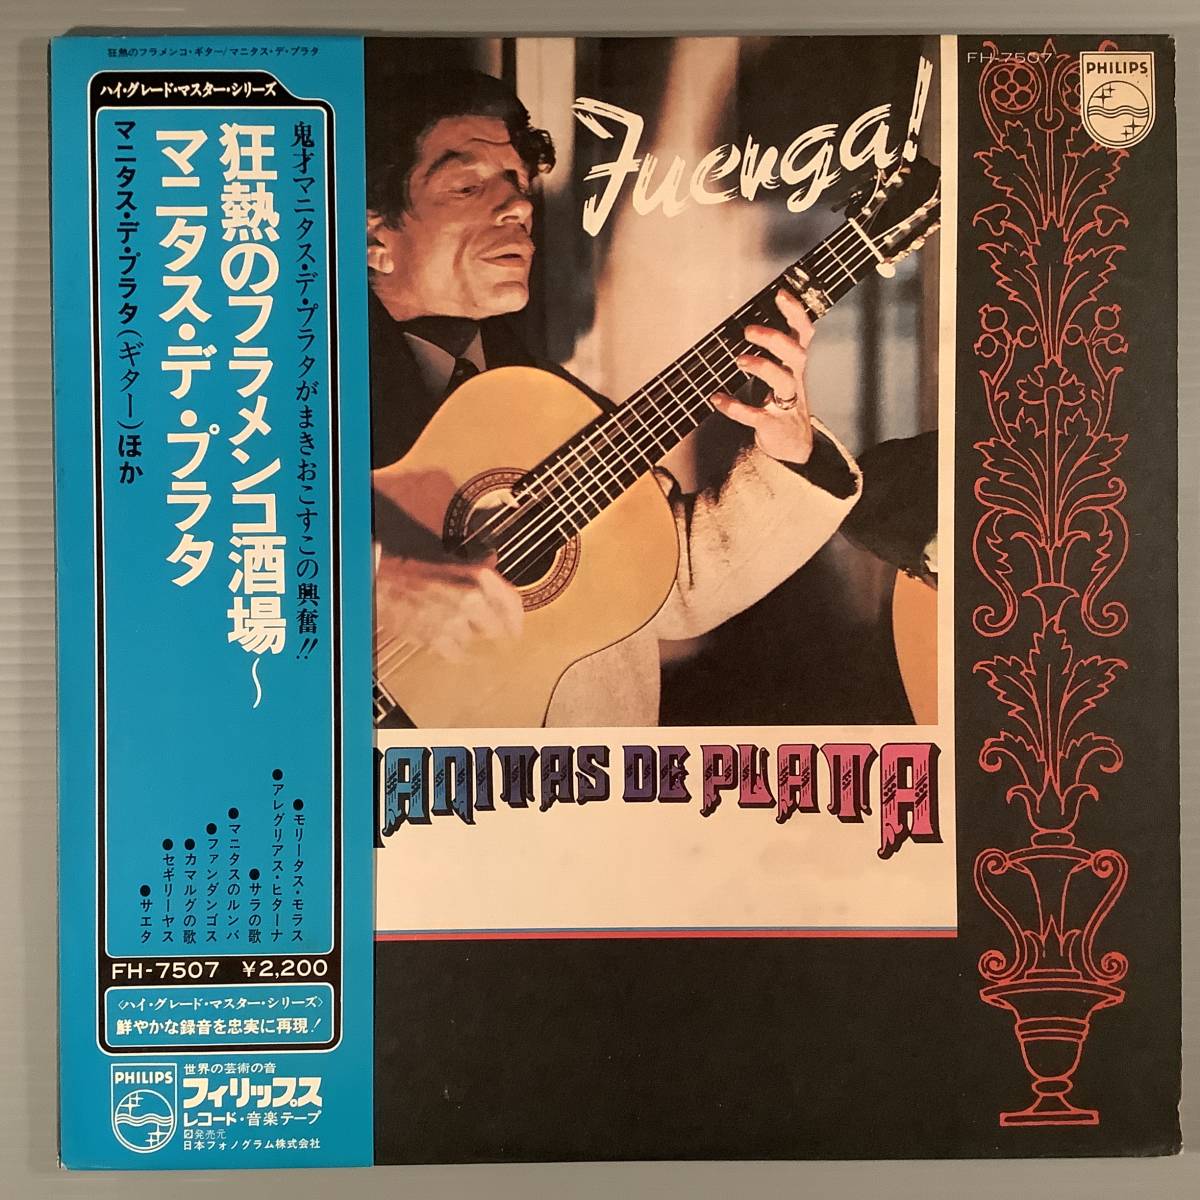 LP( записано в Японии )*manitas*te* pra ta| сумасшествие .. фламенко sake место * с лентой прекрасный товар!